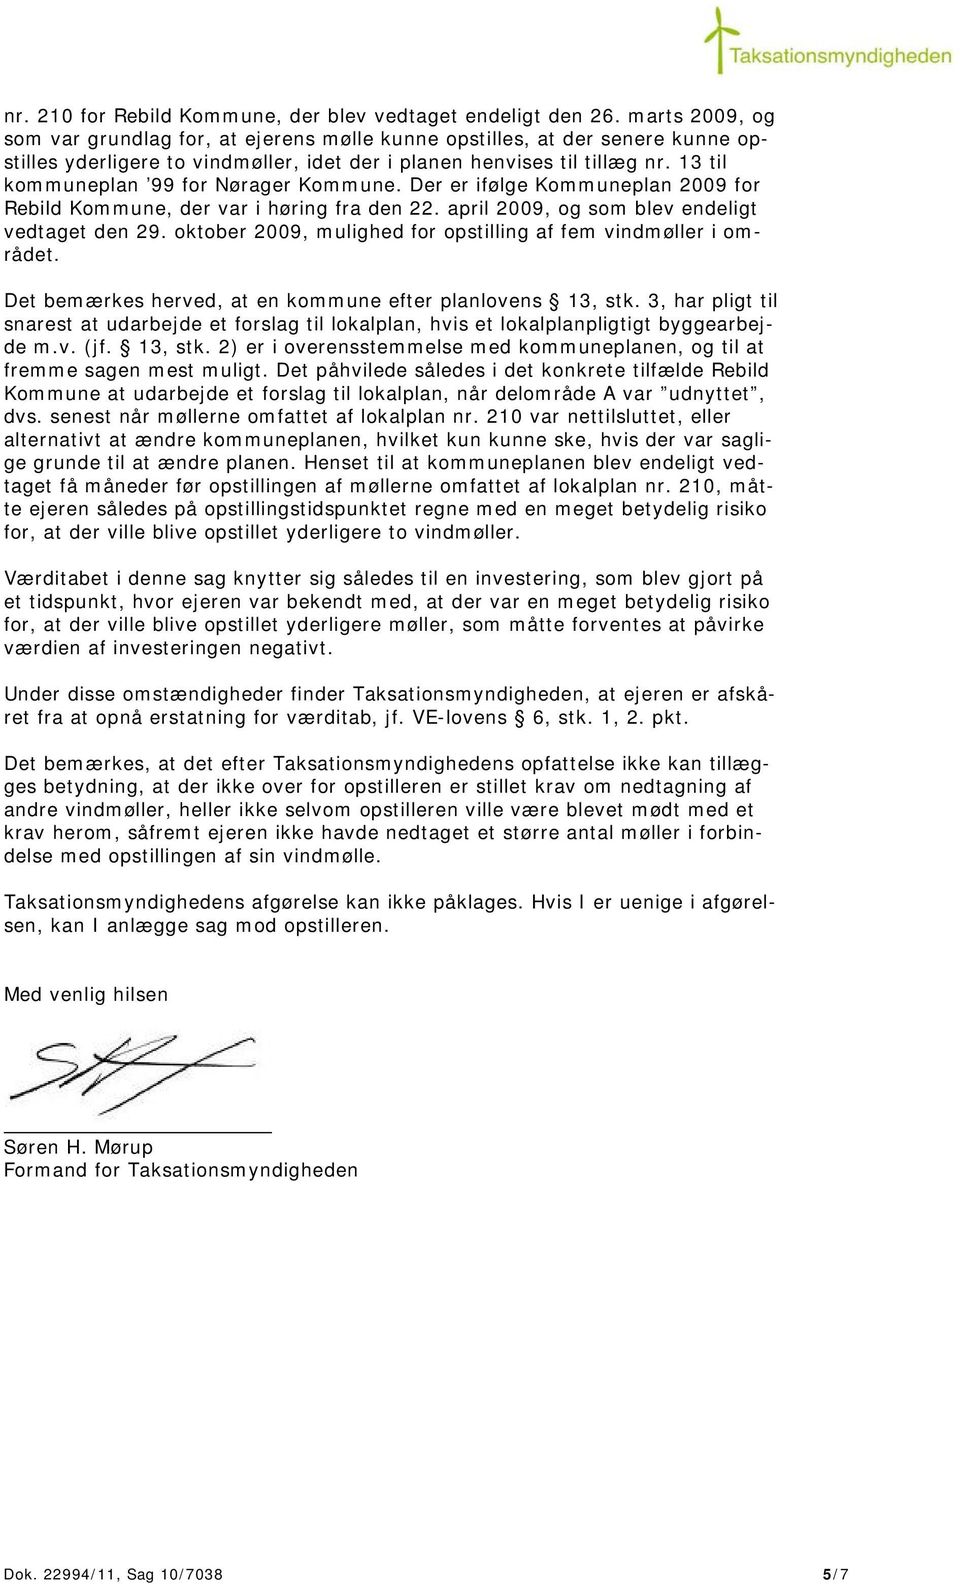 13 til kommuneplan 99 for Nørager Kommune. Der er ifølge Kommuneplan 2009 for Rebild Kommune, der var i høring fra den 22. april 2009, og som blev endeligt vedtaget den 29.